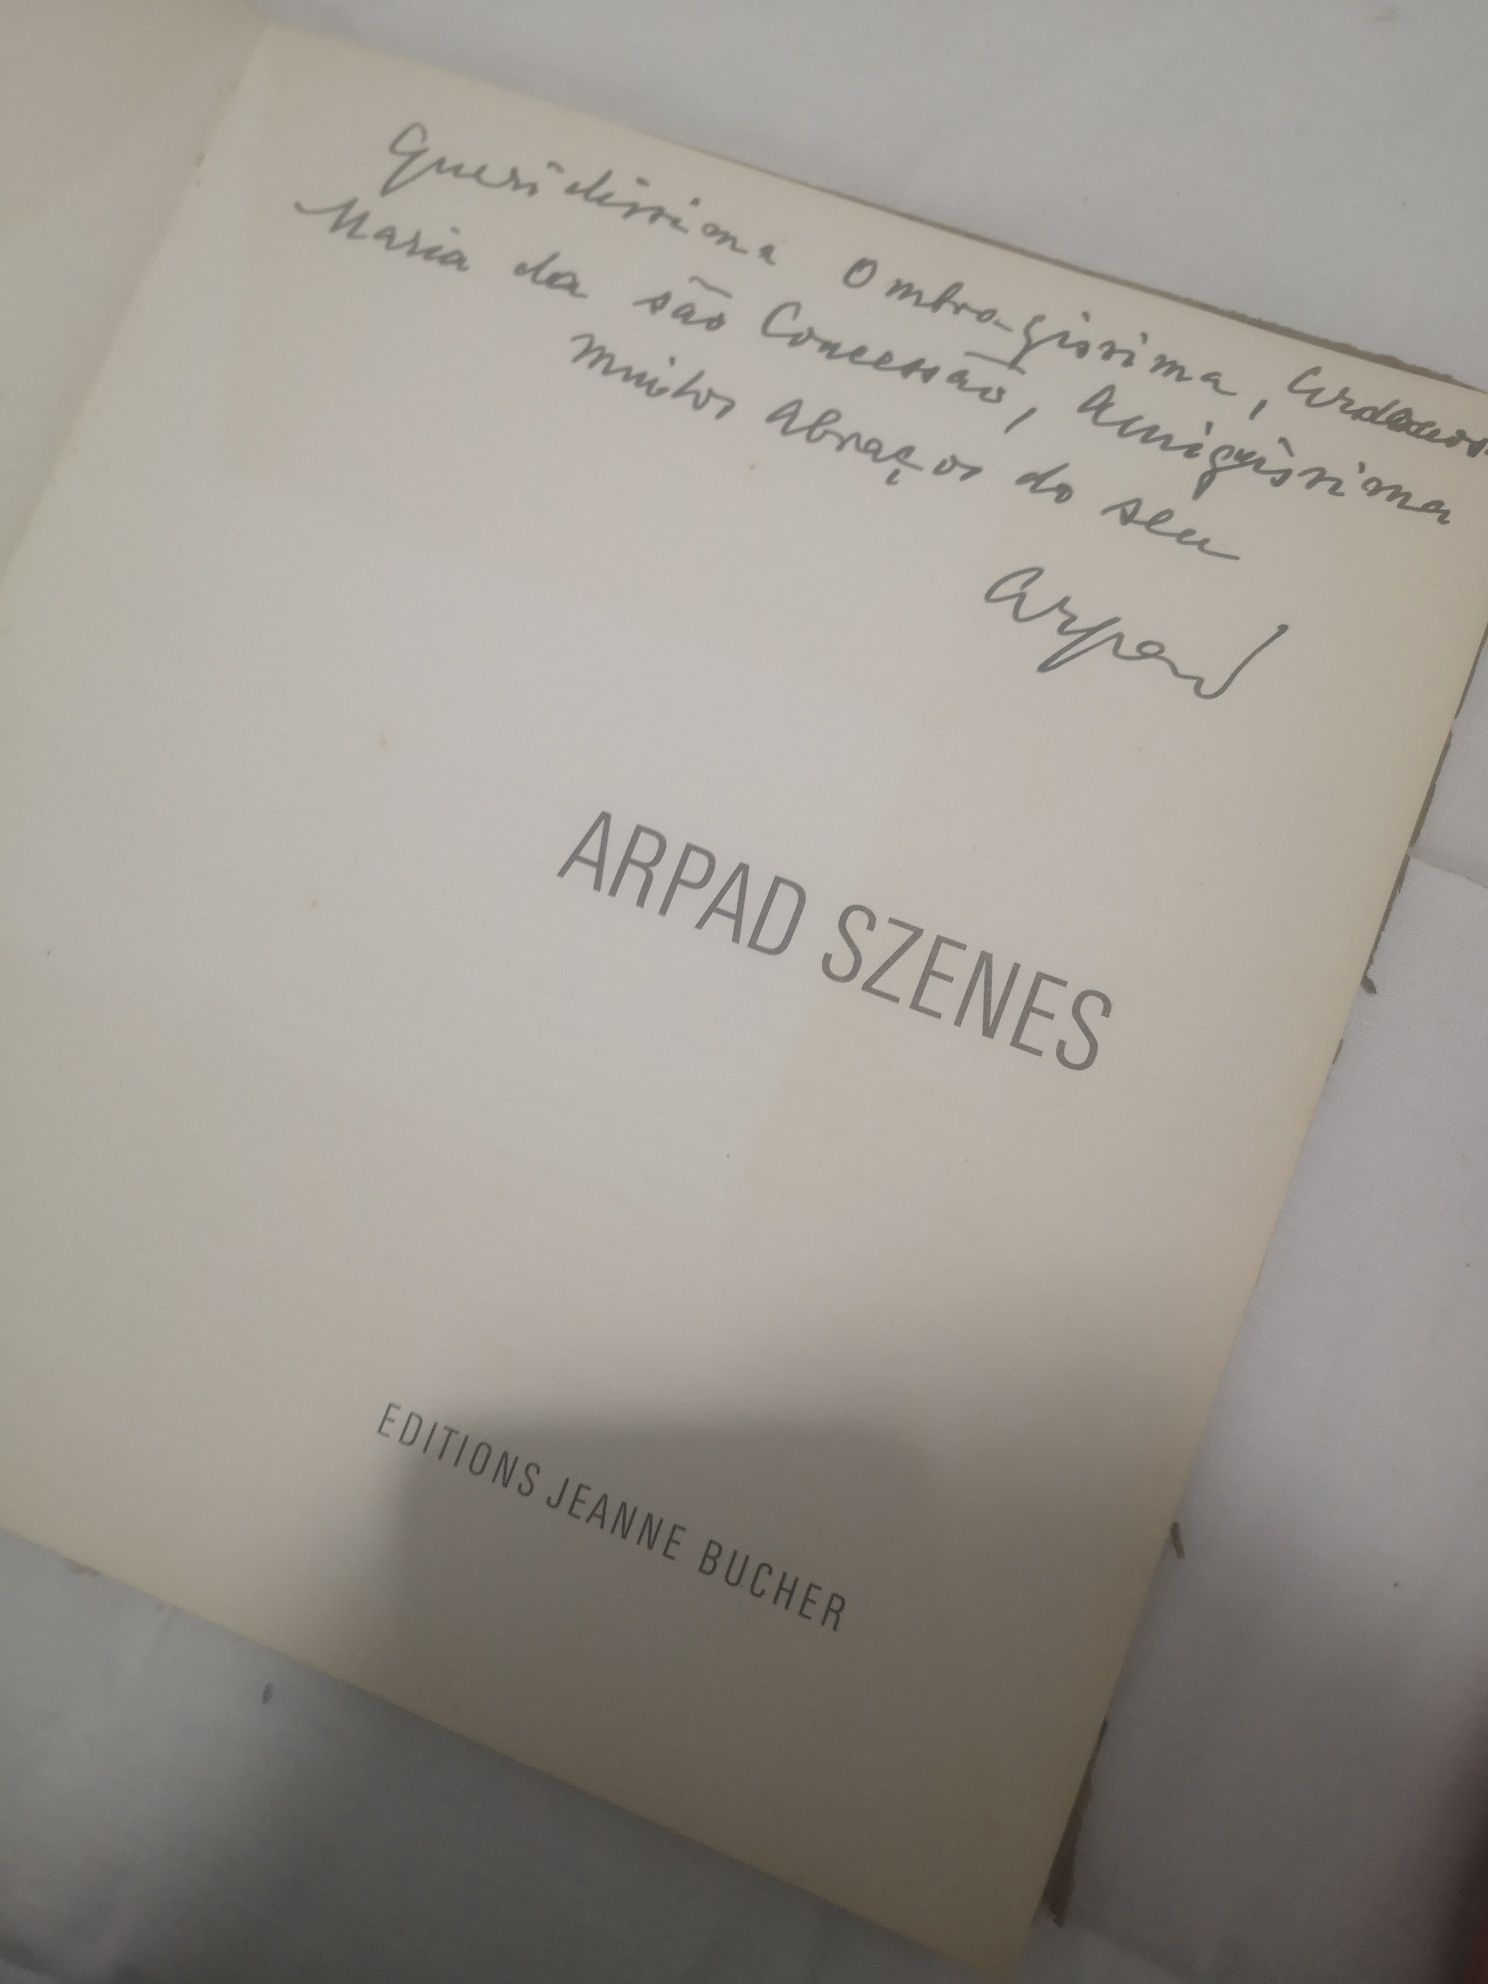 Catalogo pintura Arpad Szens autografado com dedicatória